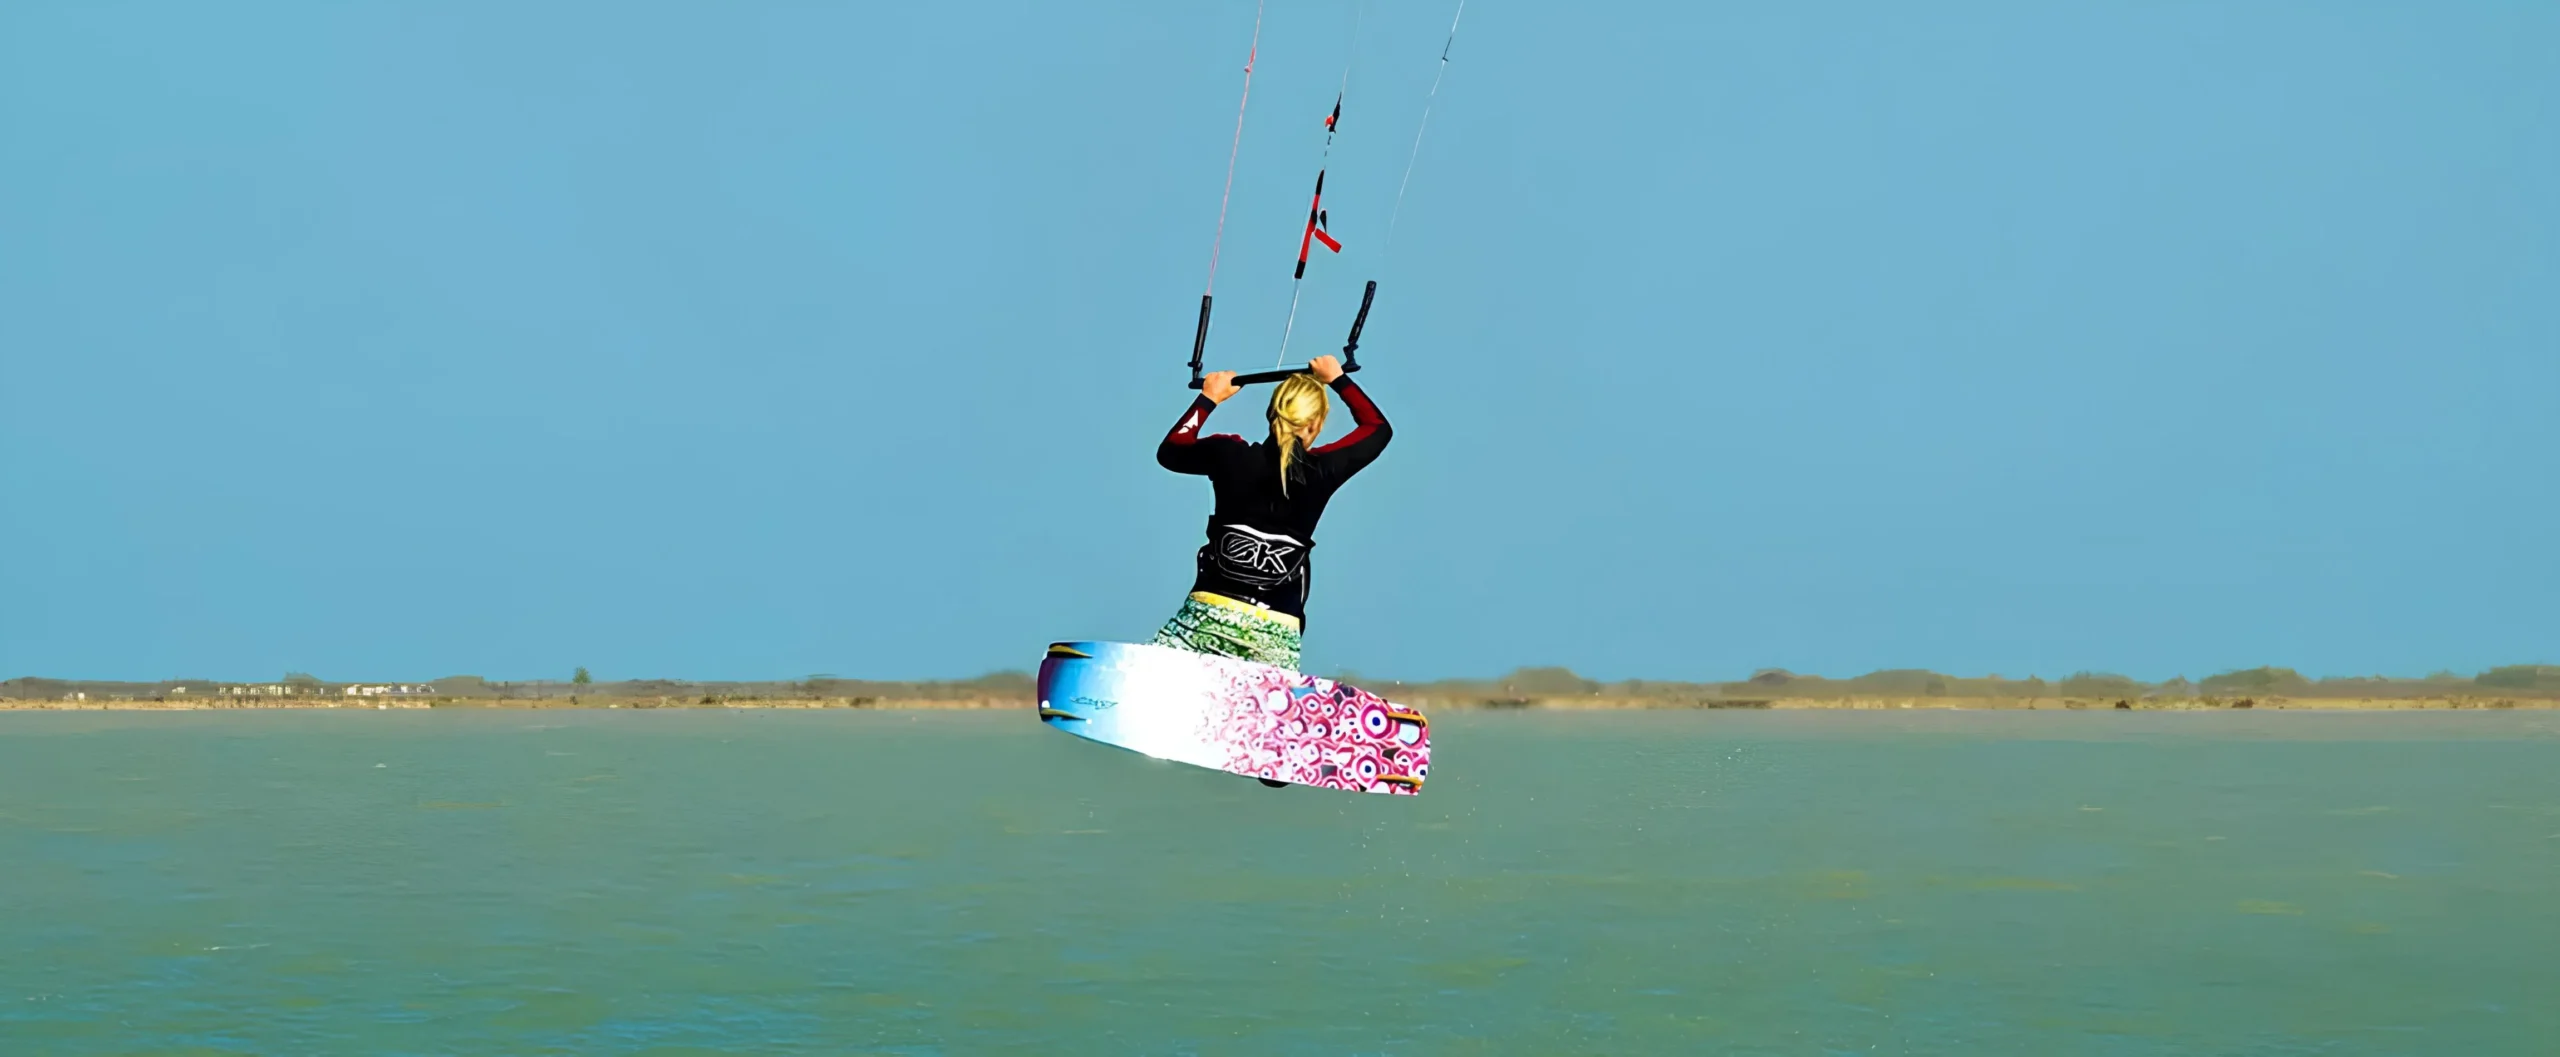 Kite Surfing and Wind Surfing